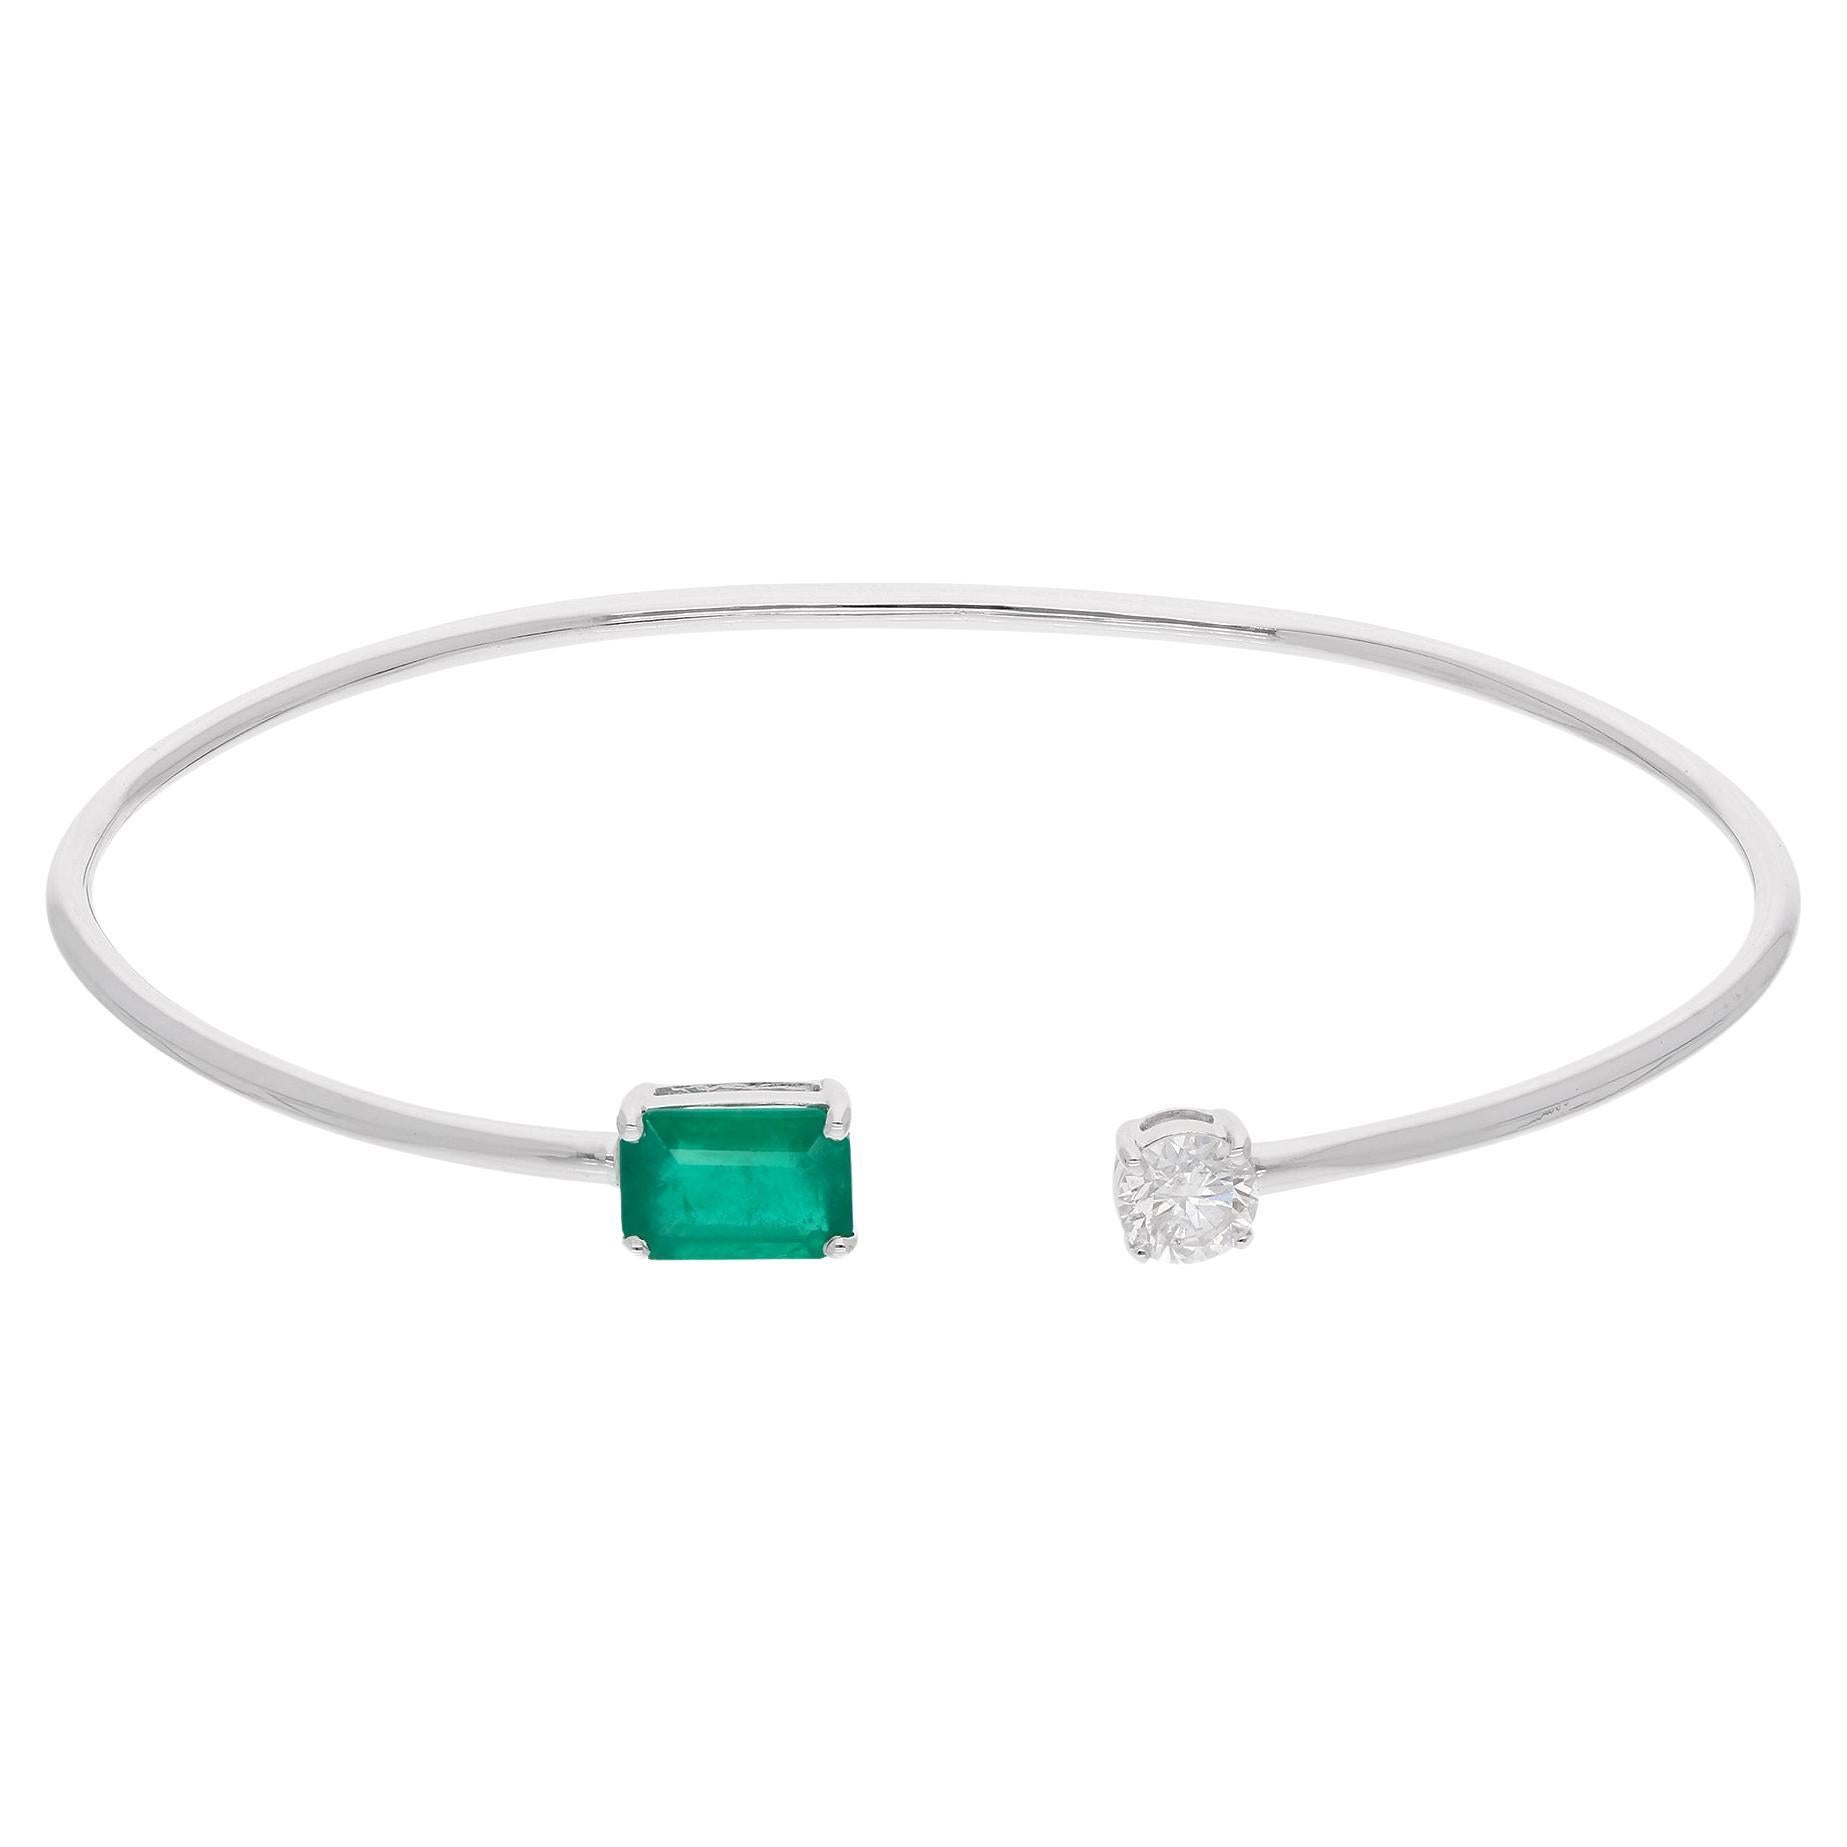 Zambia Emerald Gemstone Cuff Bangle Bracelet Diamond 14 Karat White Gold Jewelry